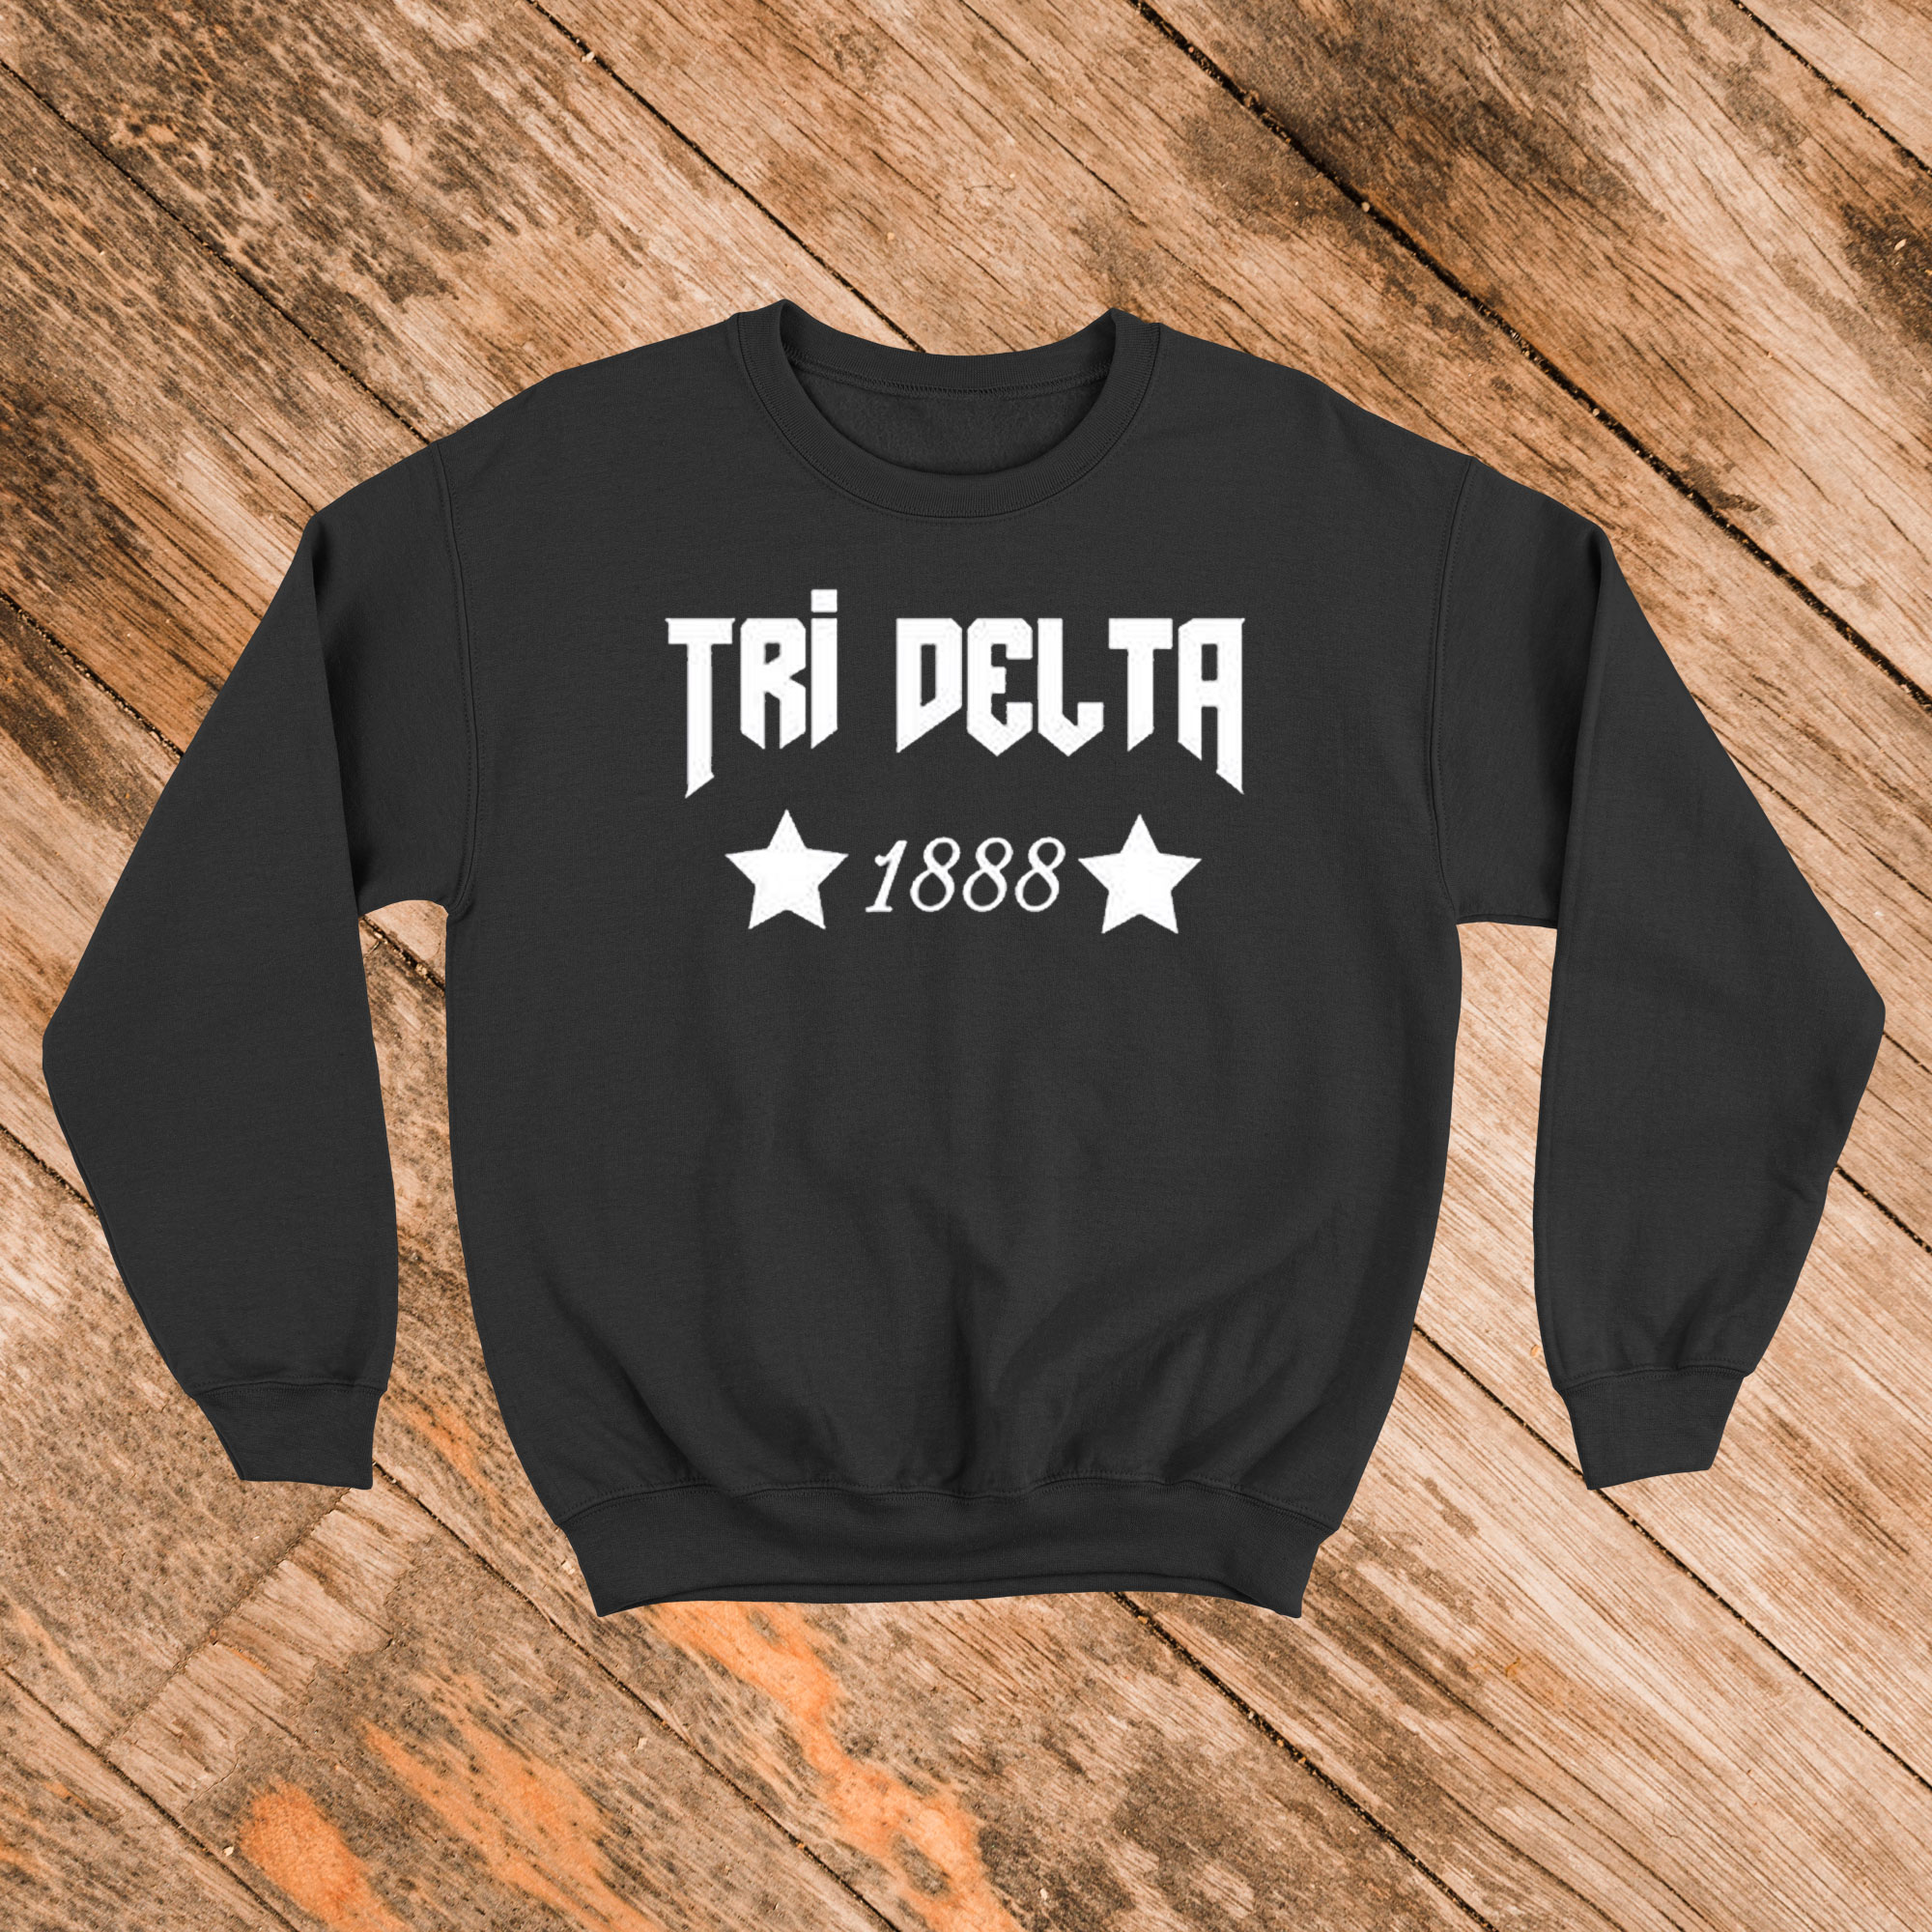 Tri delta tee sweatshirt